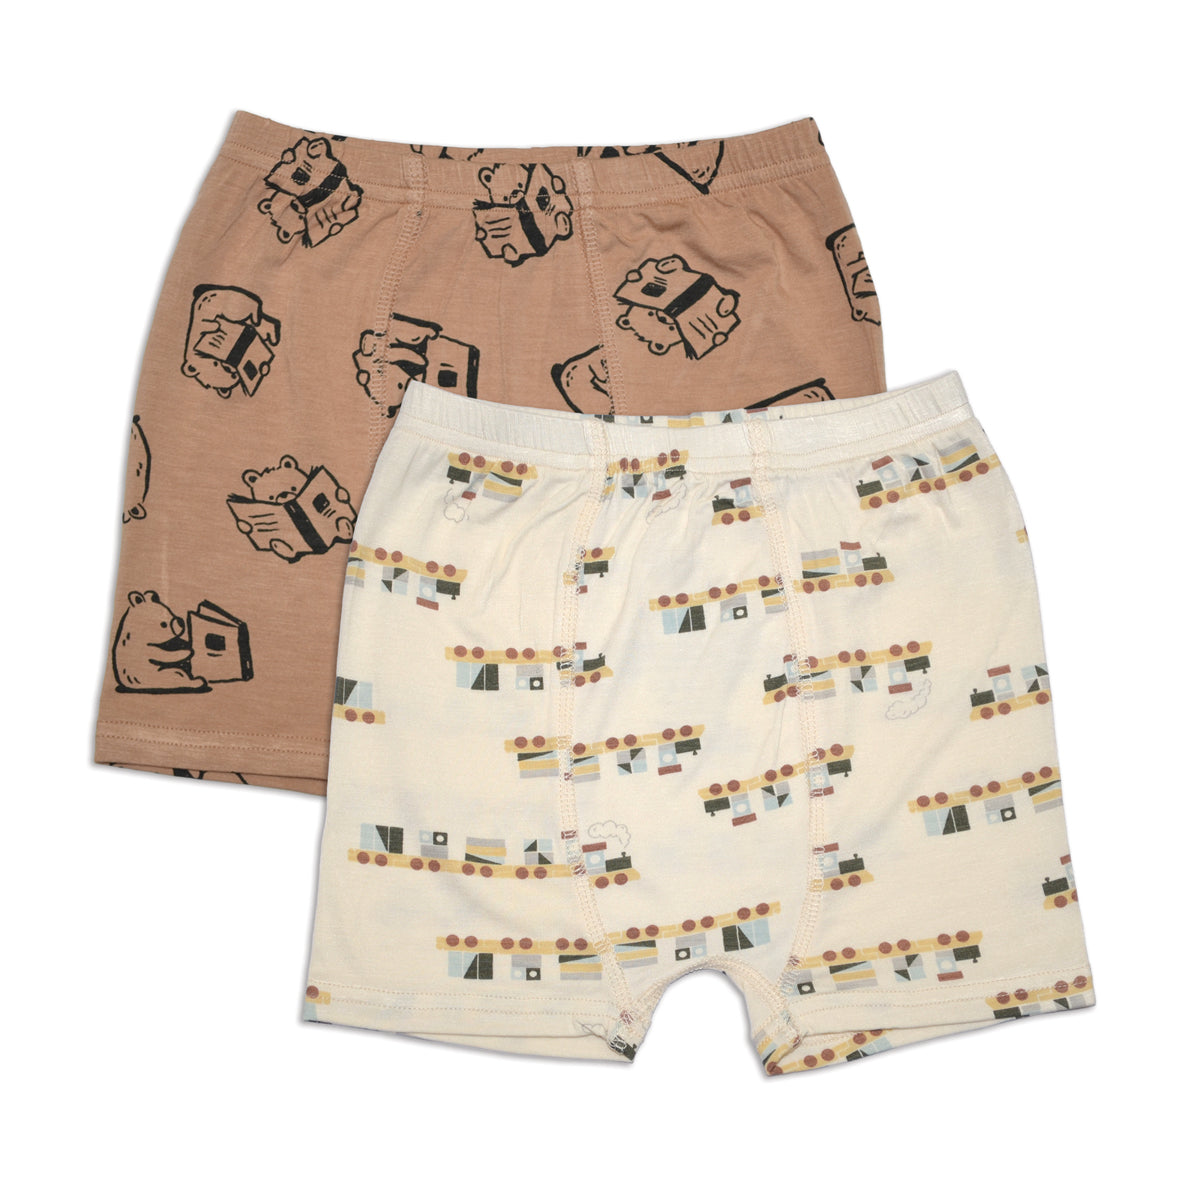 bamboo boys underwear shorts